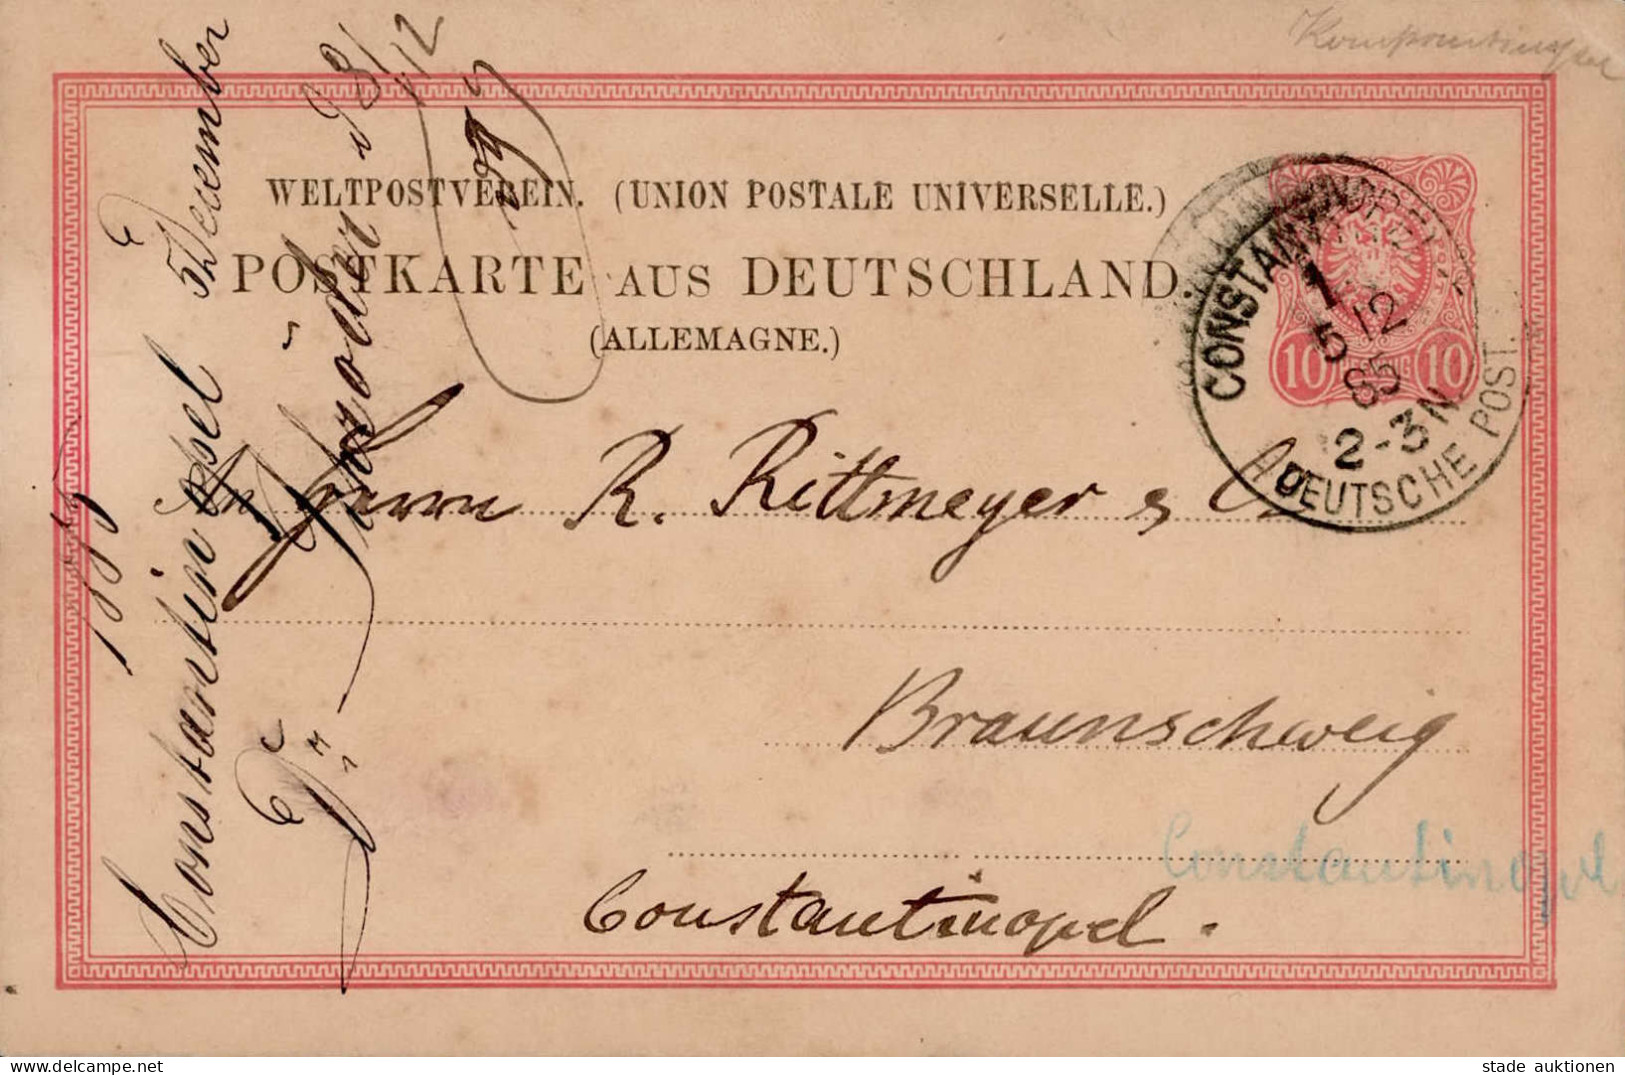 Deutsche Post Türkei Constantinopel Vorläufer Auf DR Pfennig Ganzsache 1885 II - Ehemalige Dt. Kolonien